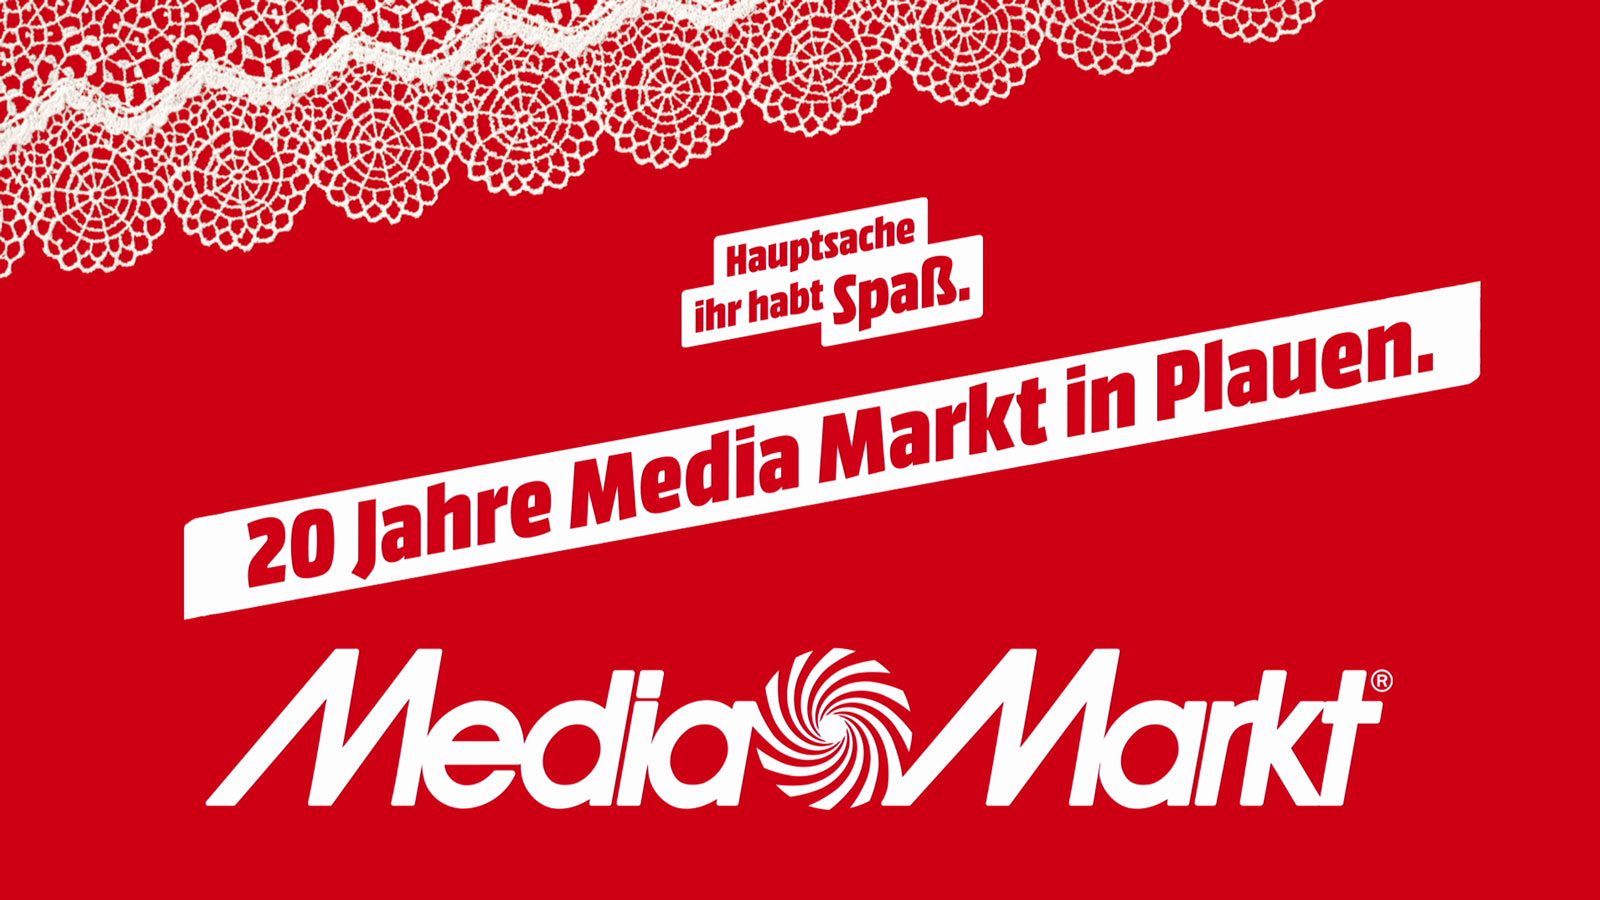 MediaMarkt Plauen Werbespot - 20 Jahre in Plauen Mediamarkt Plauen - Werbespot